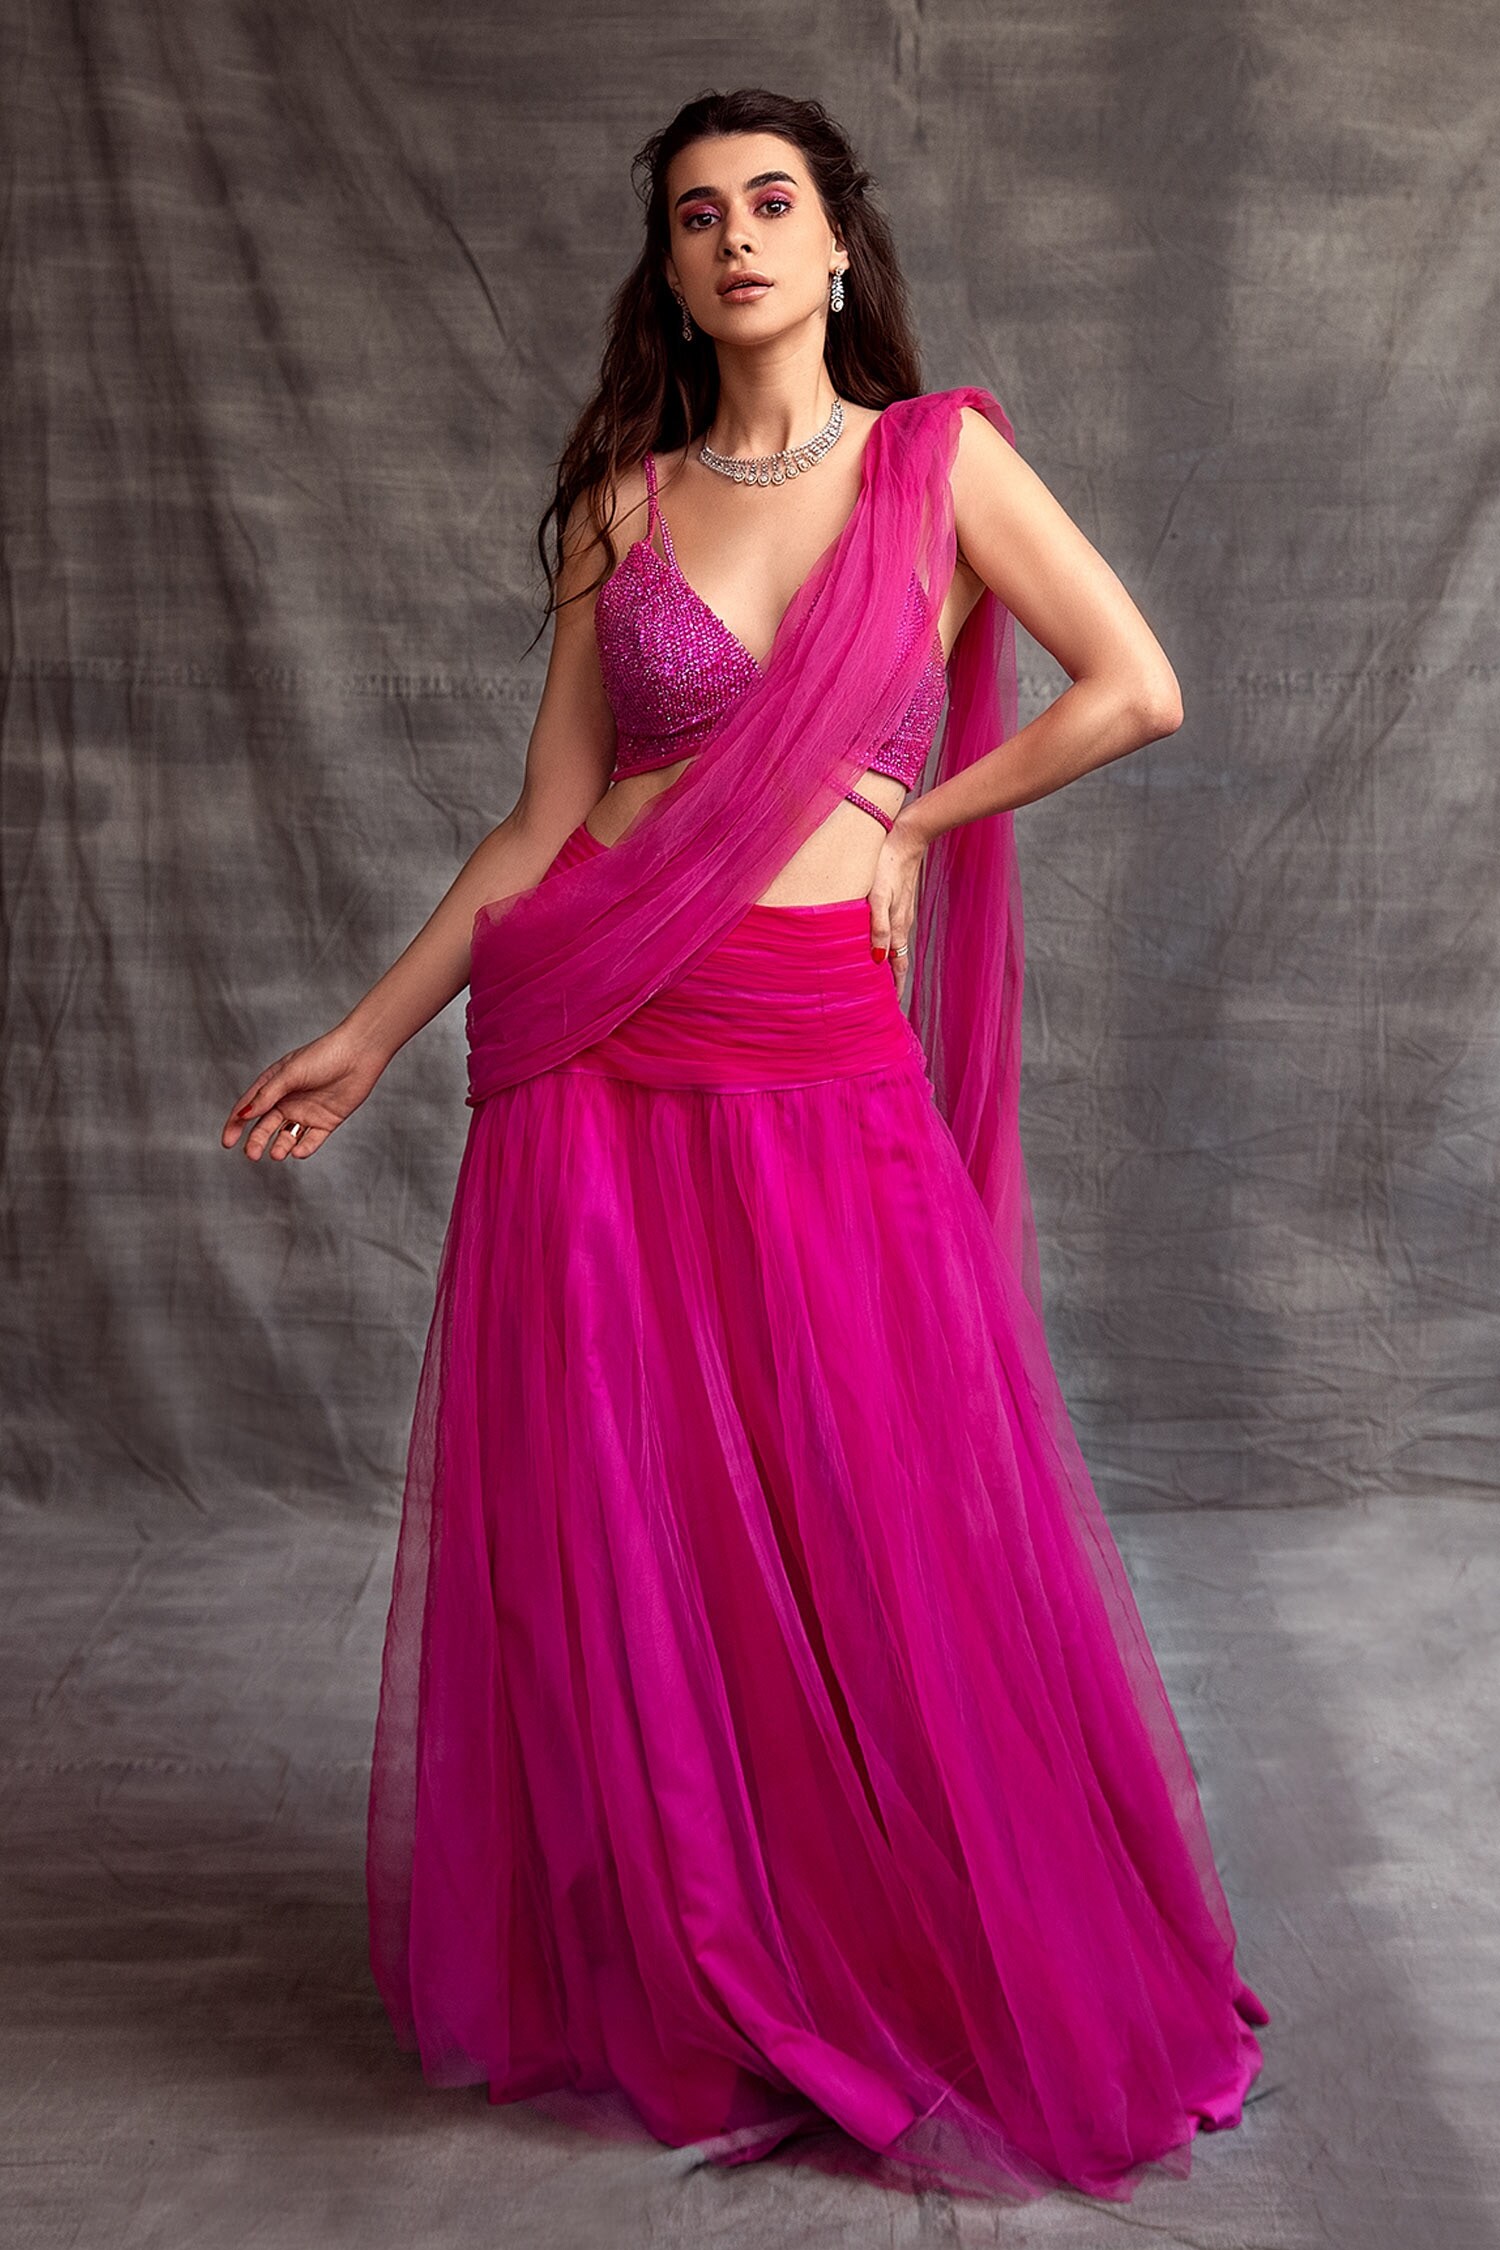 Shehlaa Khan Pink Pre-draped Lehenga Saree With Blouse